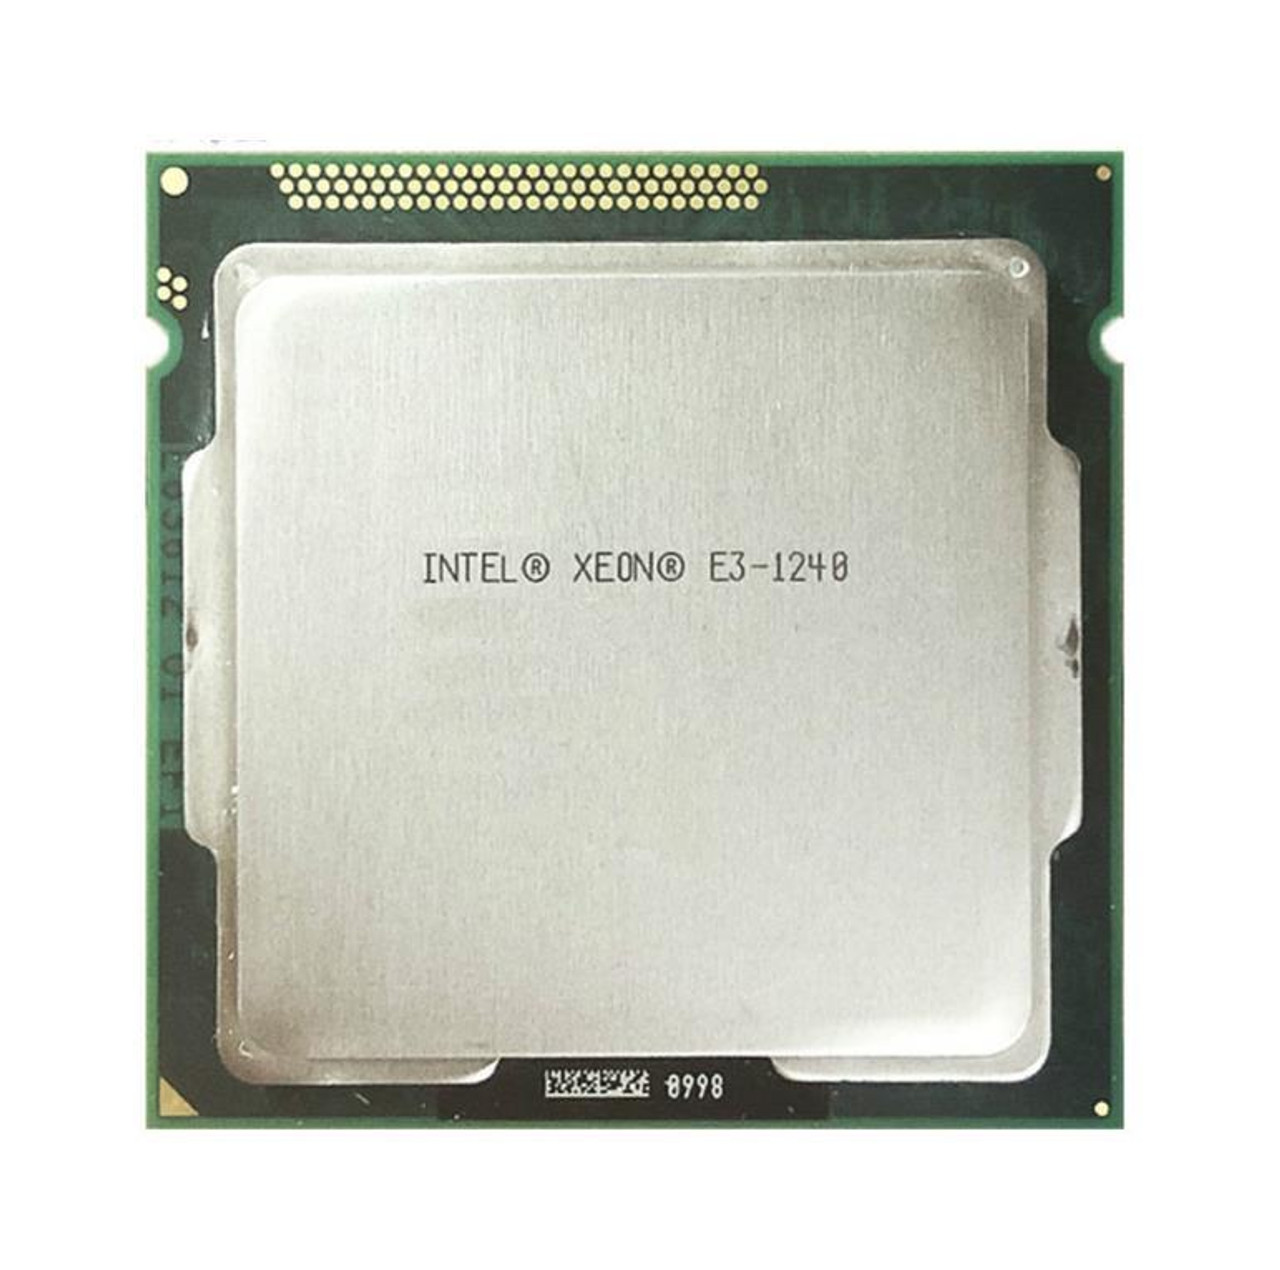 Fujitsu 3.40GHz 5.00GT/s DMI 8MB L3 Cache Socket FCLGA1150 Intel Xeon E3-1240 v3 Quad-Core Processor Upgrade